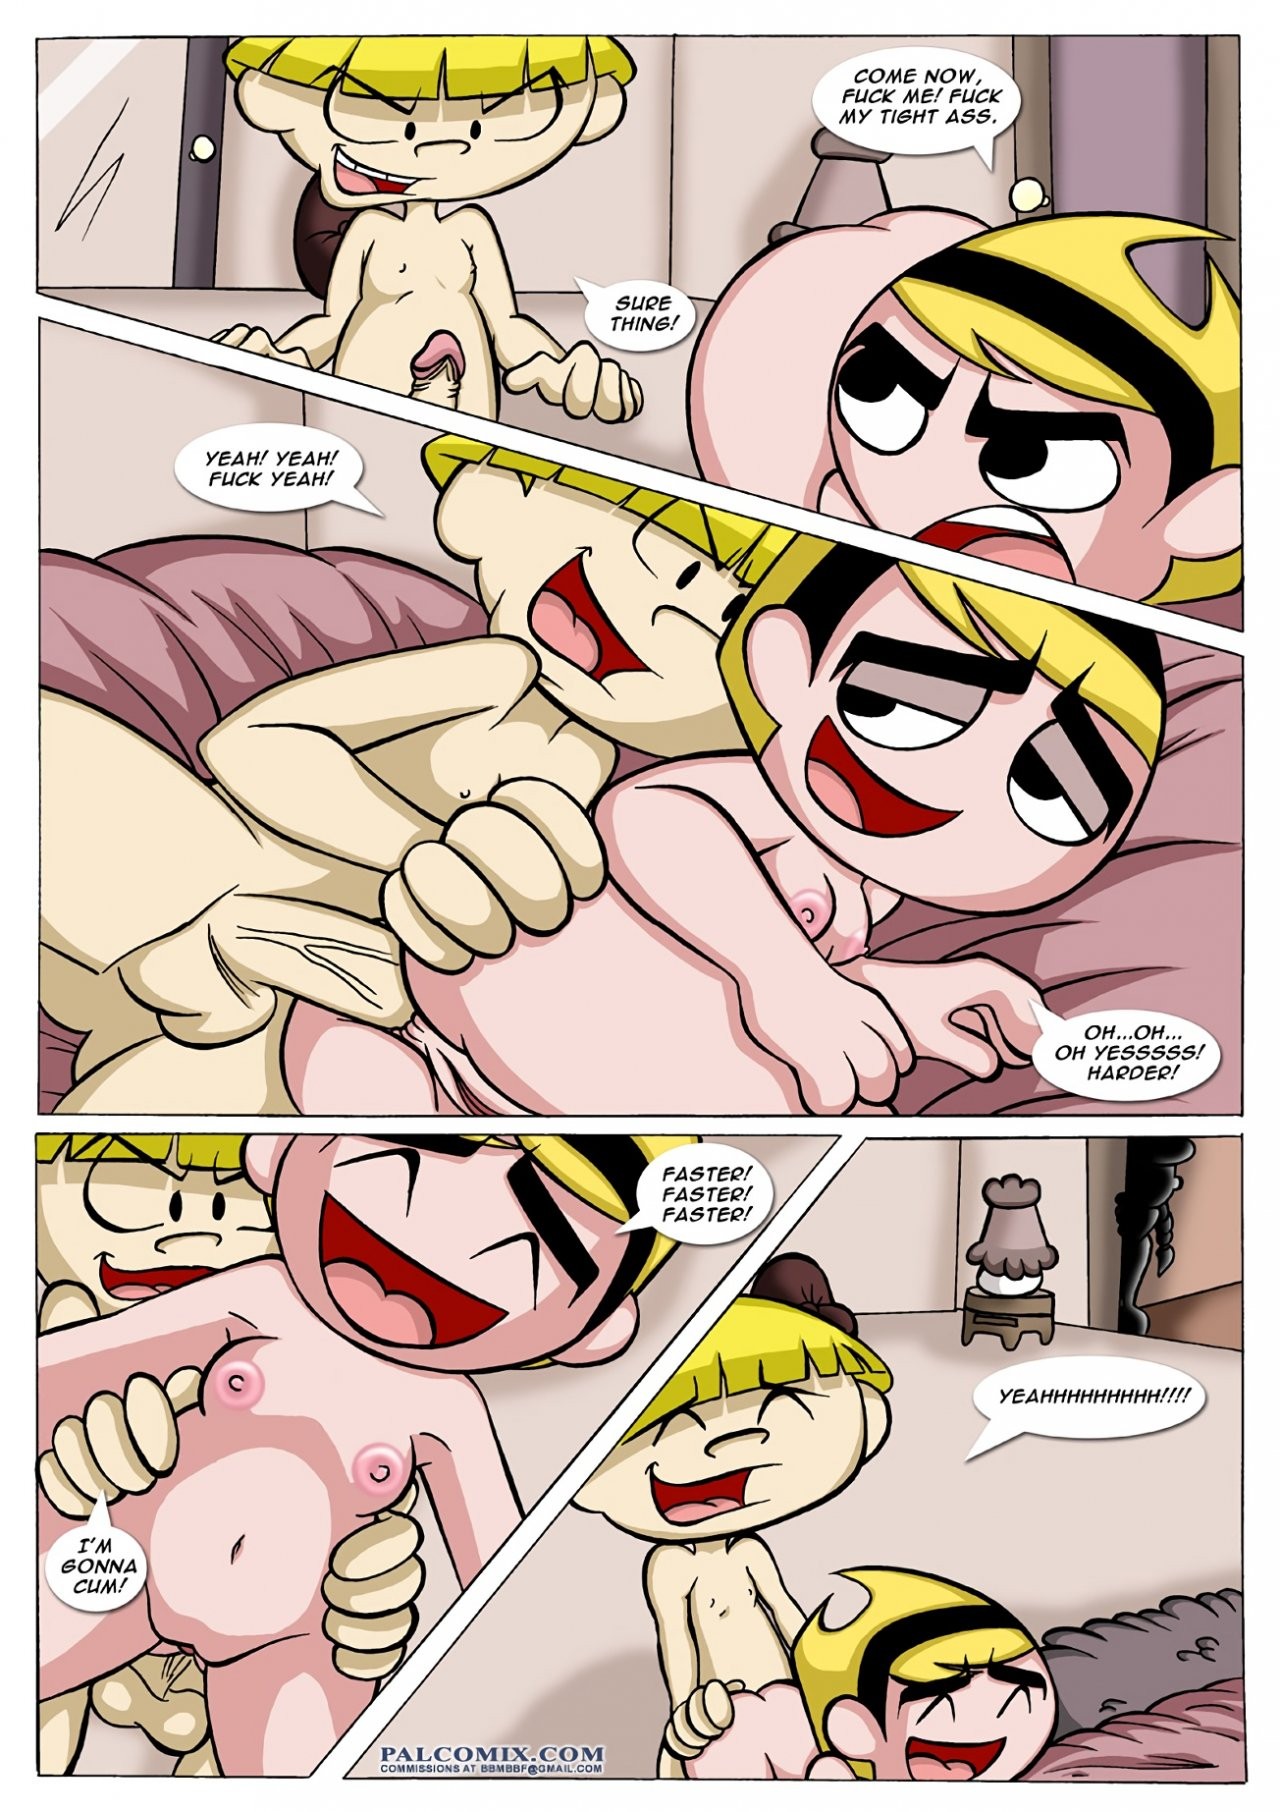 The Sex Adventures of the Kids Next Door 01 porn comic picture 8